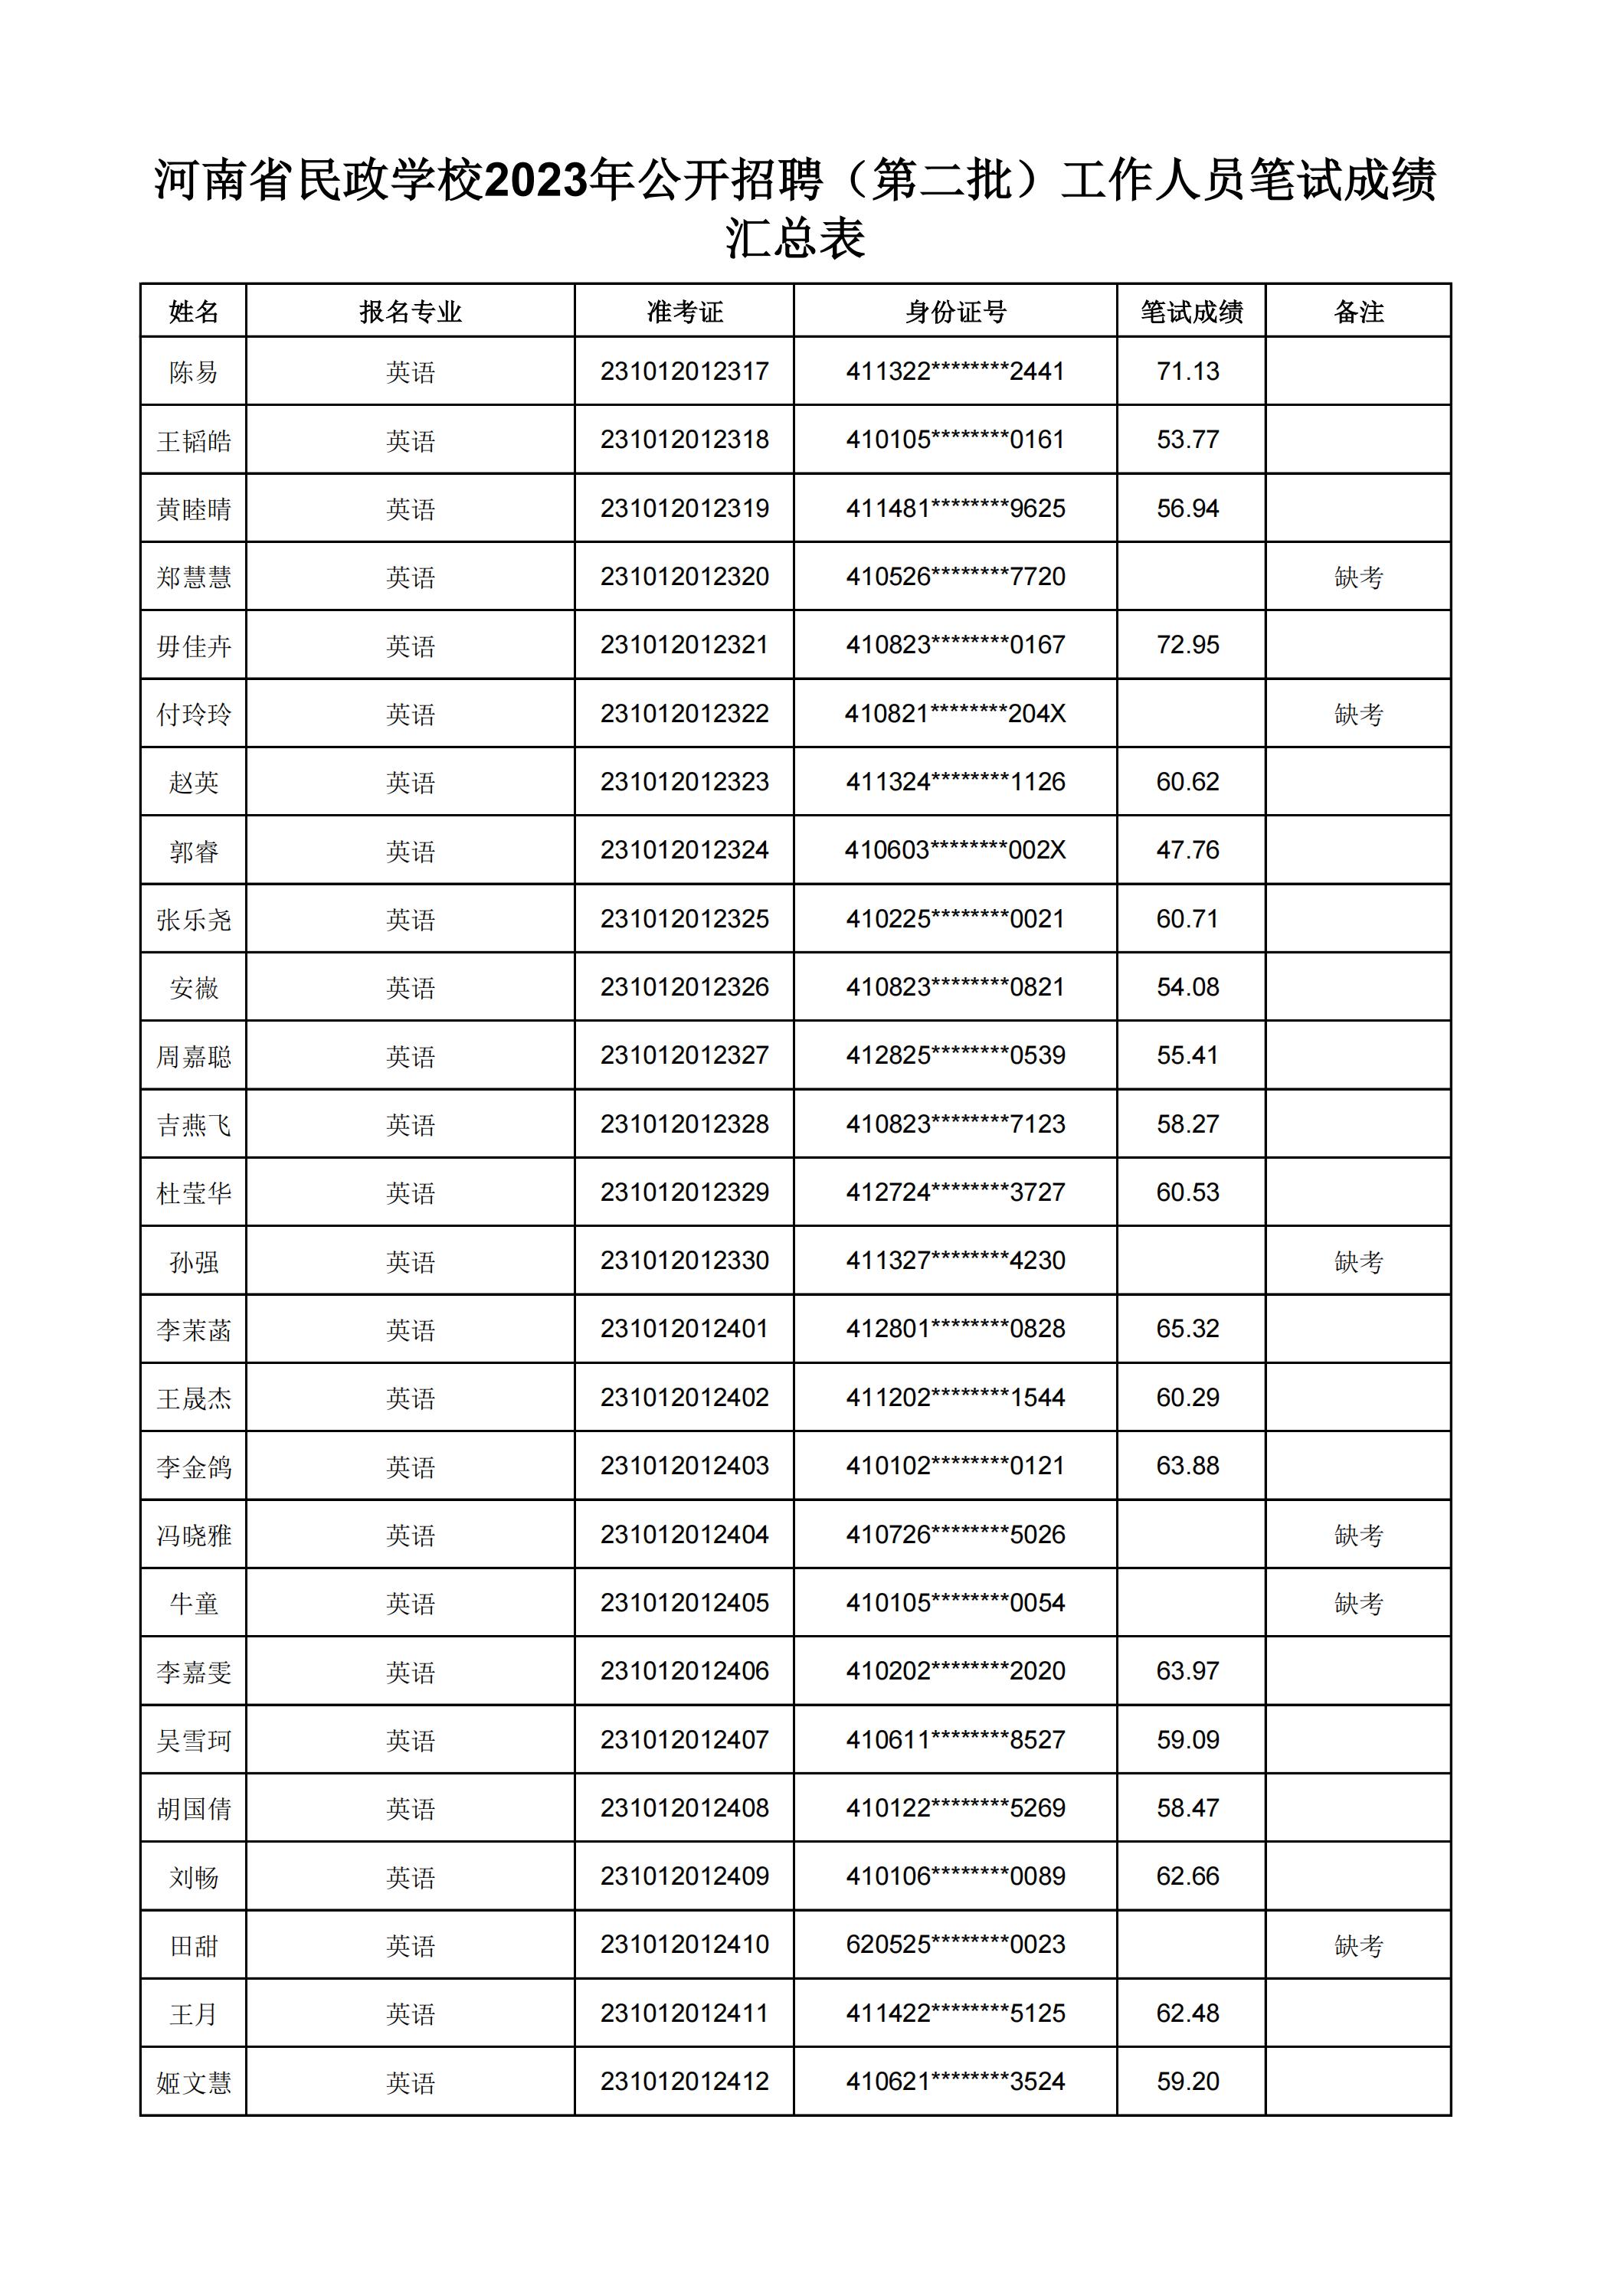 河南省民政学校2023年公开招聘（第二批）工作人员笔试成绩汇总表(2)_26.jpg